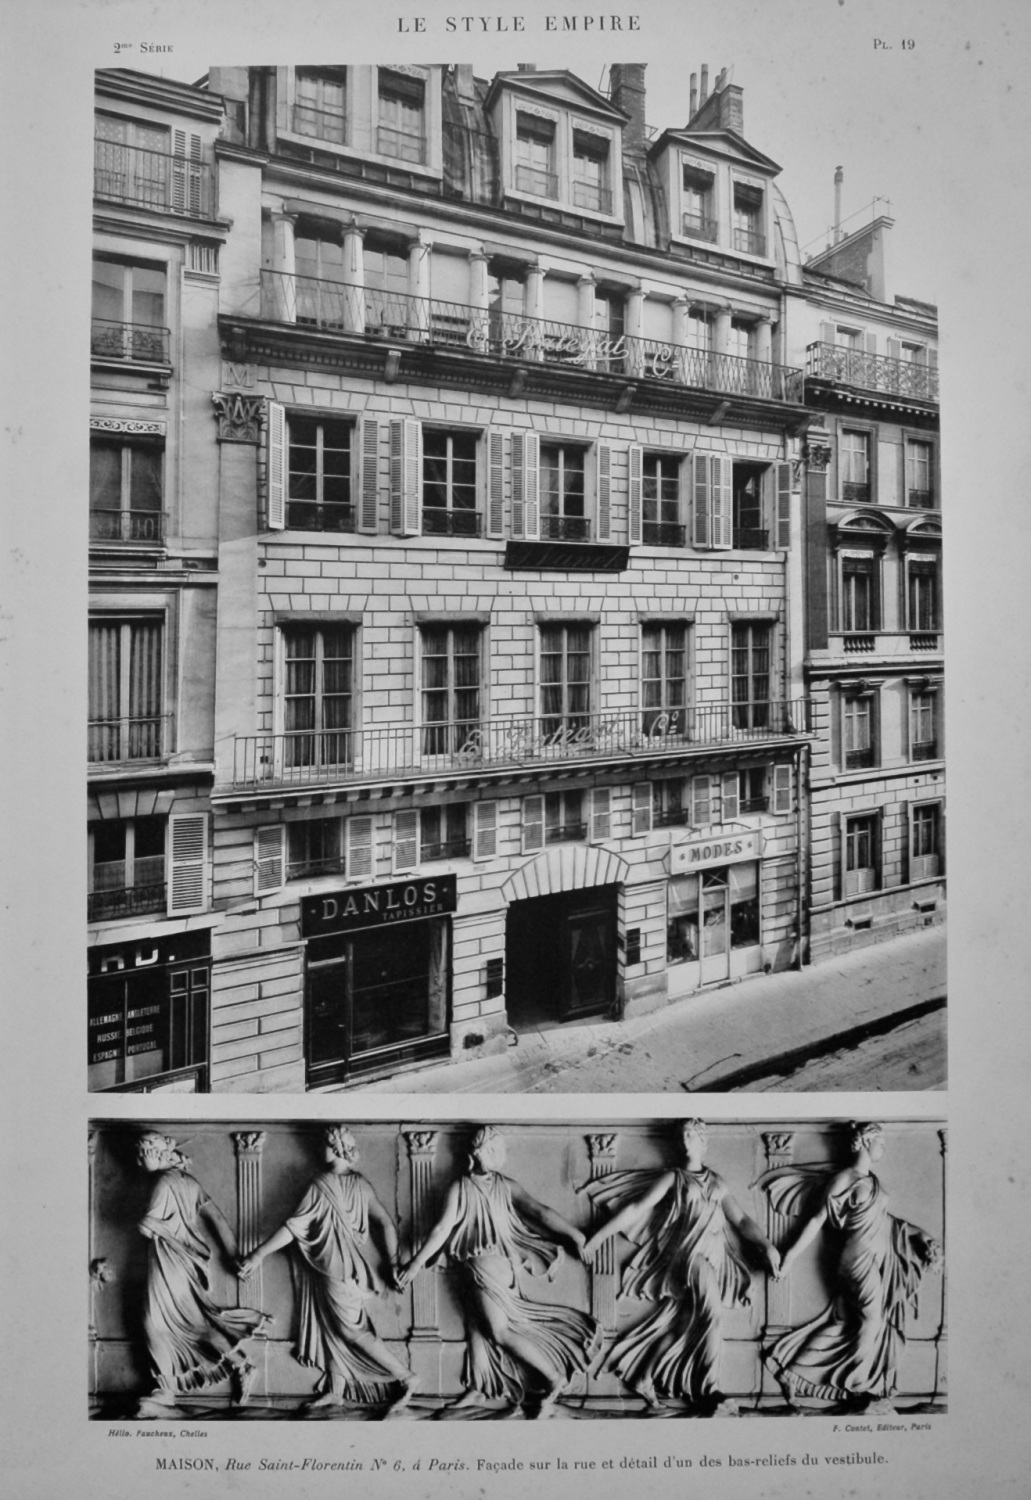 Maison, Rue Saint-Florentin No 6, a Paris.  Facade sur la rue et detail d'u